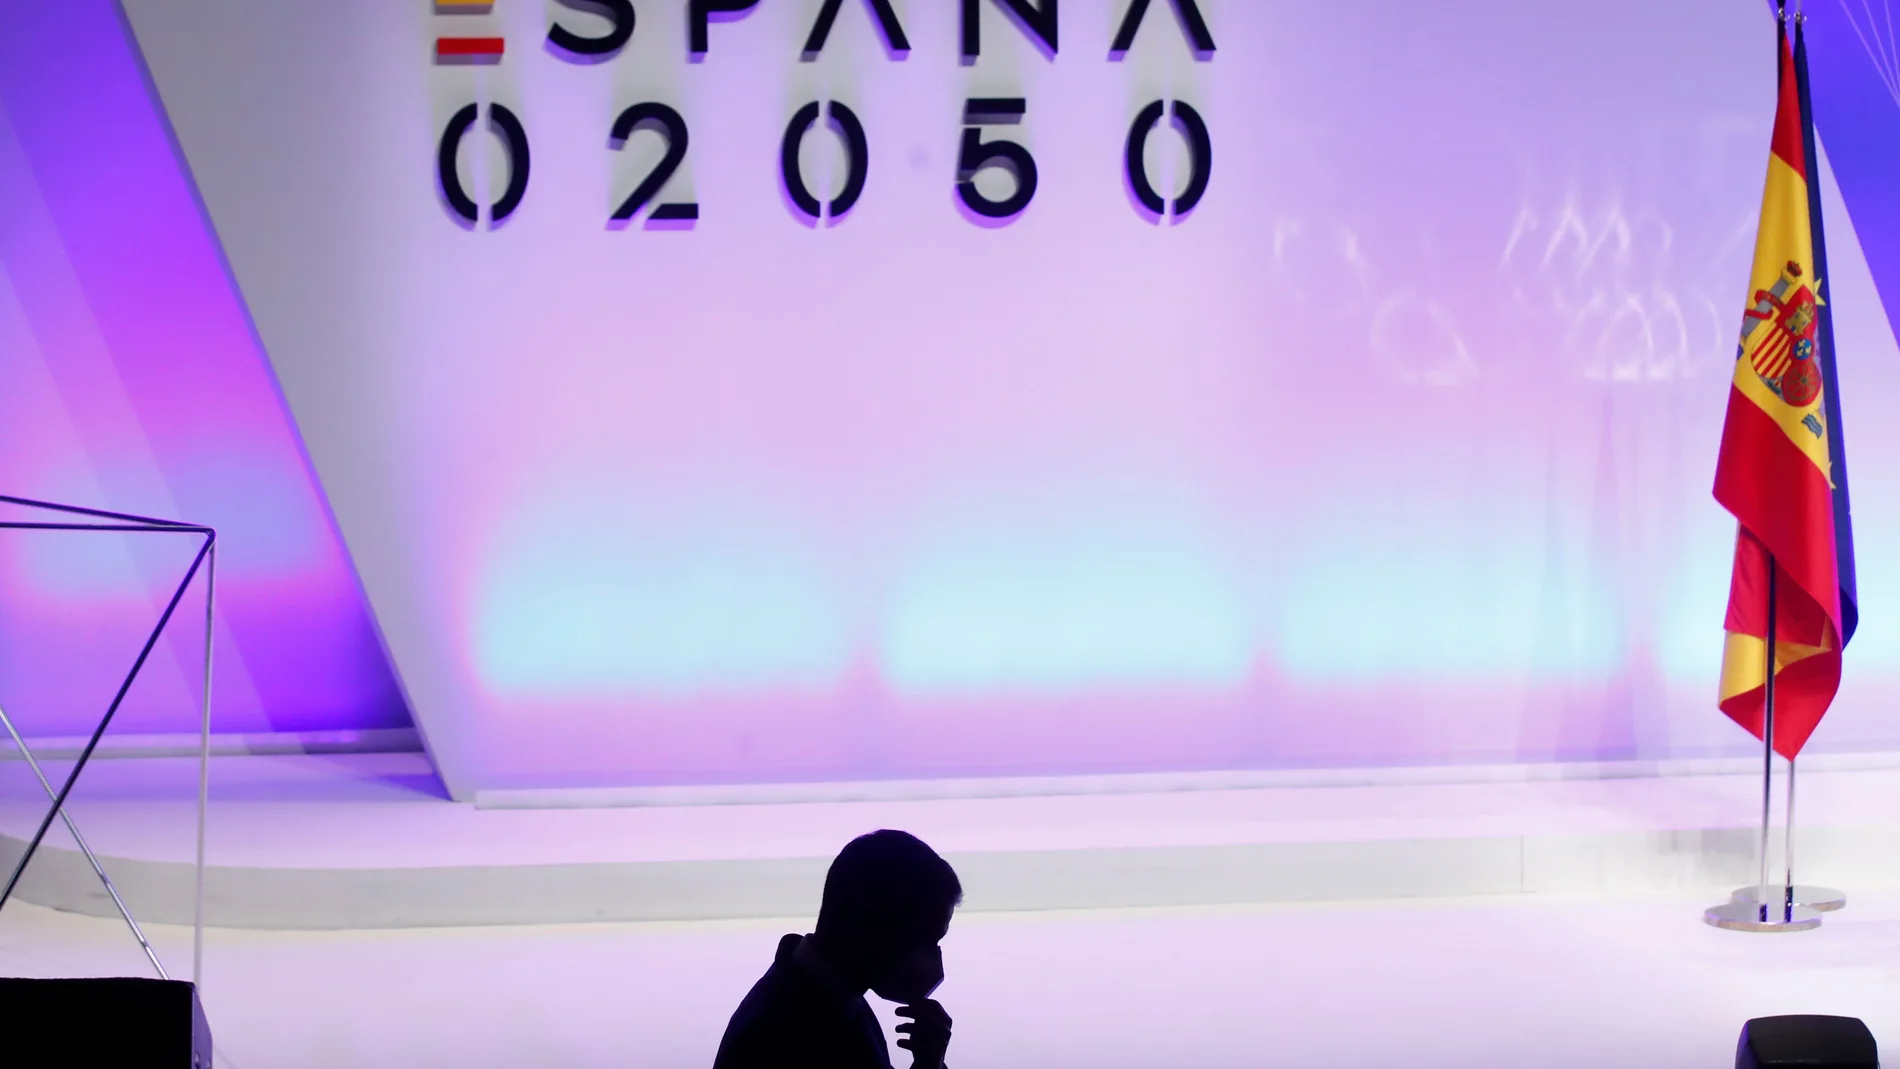 El presidente del Gobierno, Pedro Sánchez, durante la presentación del proyecto España 2050